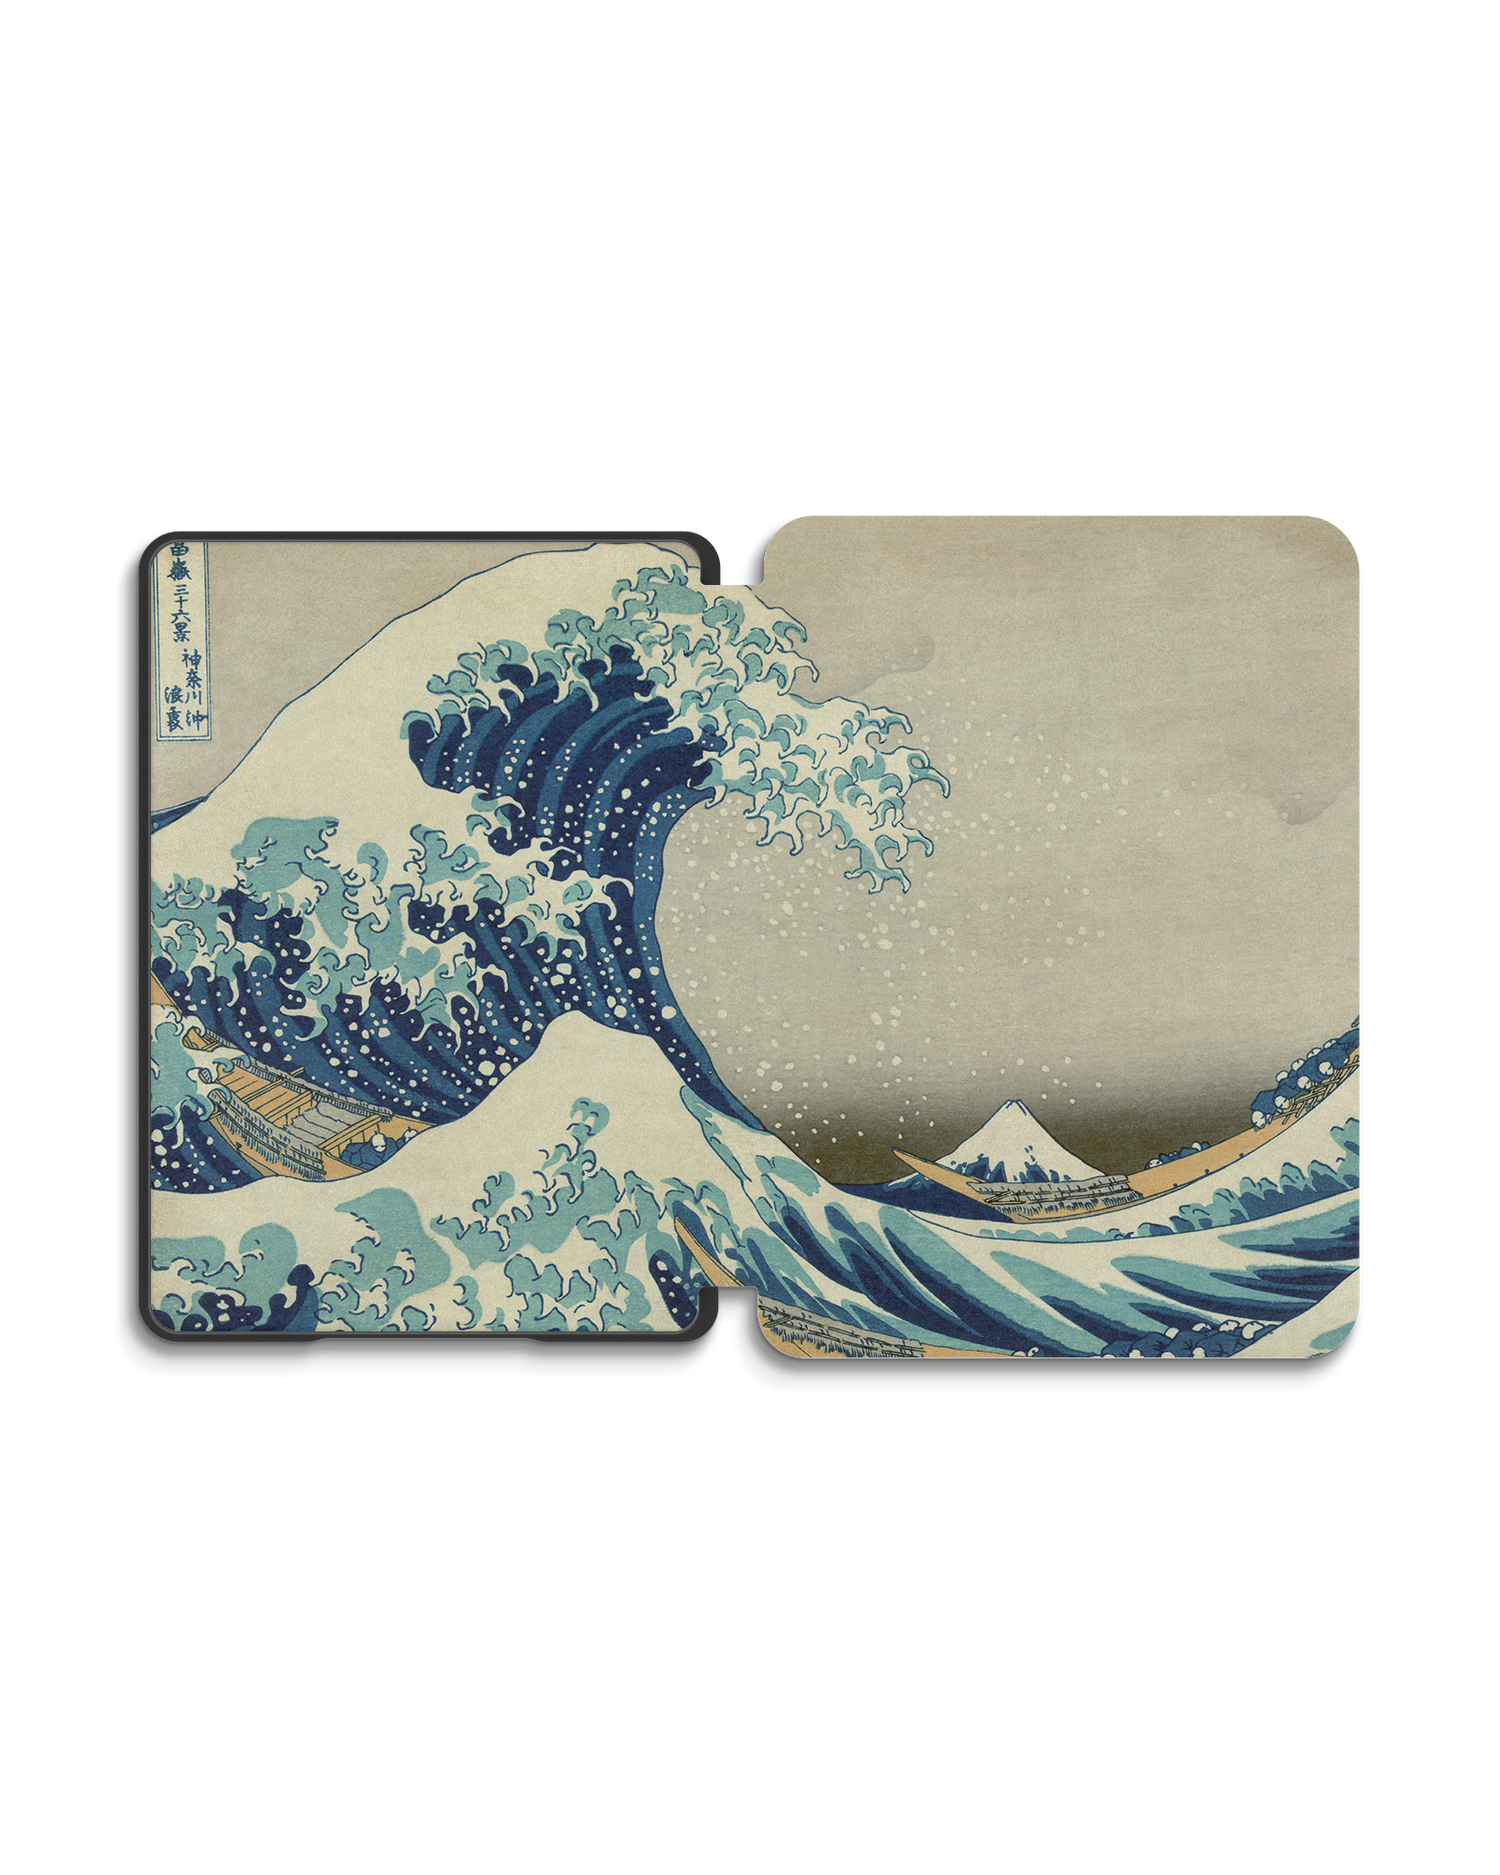 Great Wave Off Kanagawa By Hokusai eBook Reader Smart Case für Amazon New Kindle (2019): Geöffnet Außenansicht